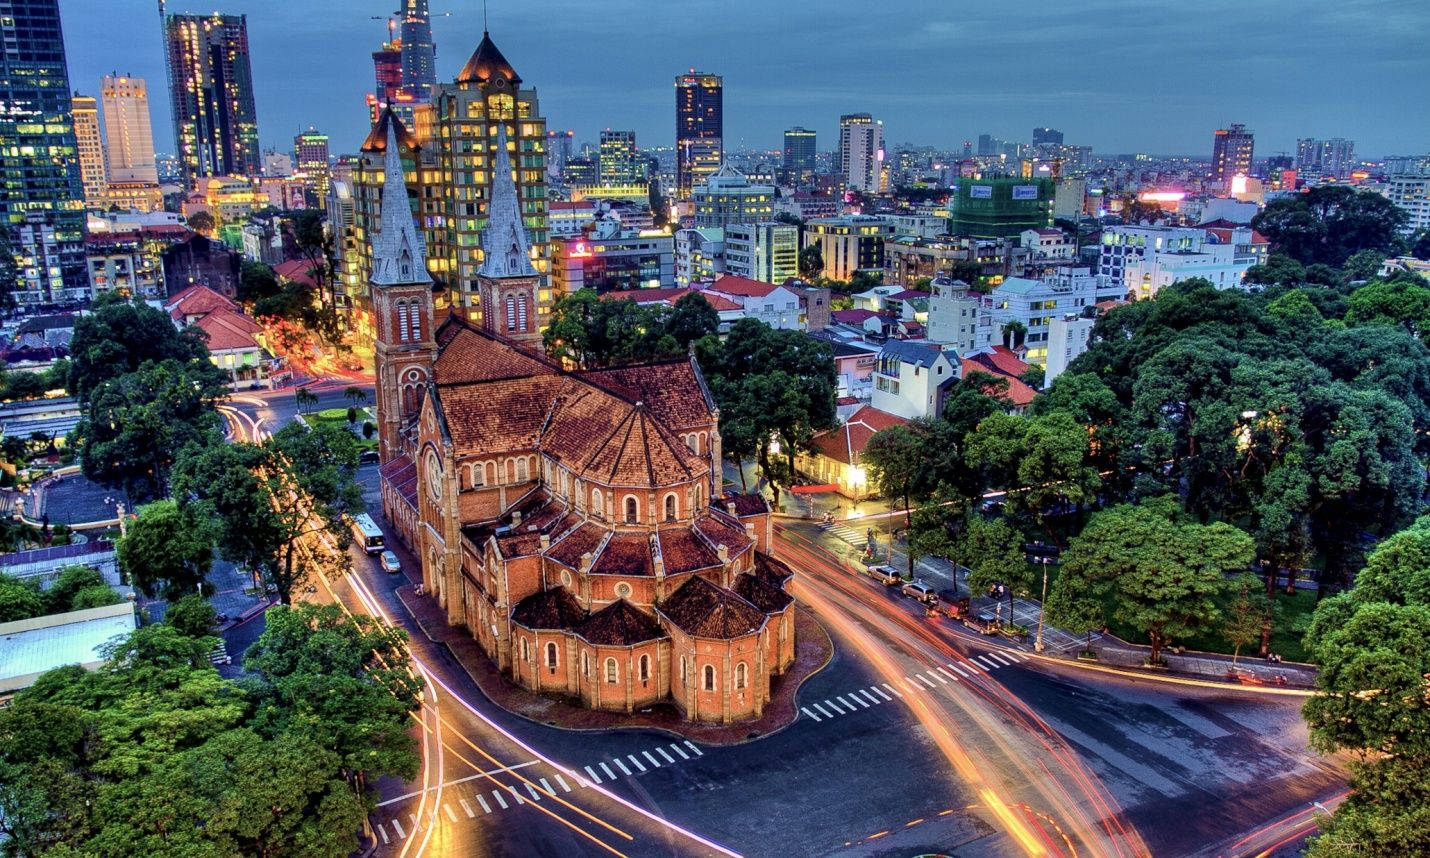 Jagföreslår Att Du Använder Ho Chi Minh City Gothic Cathedral Som Bakgrundsbild På Din Dator Eller Mobiltelefon. Det Skulle Se Väldigt Imponerande Ut! Wallpaper